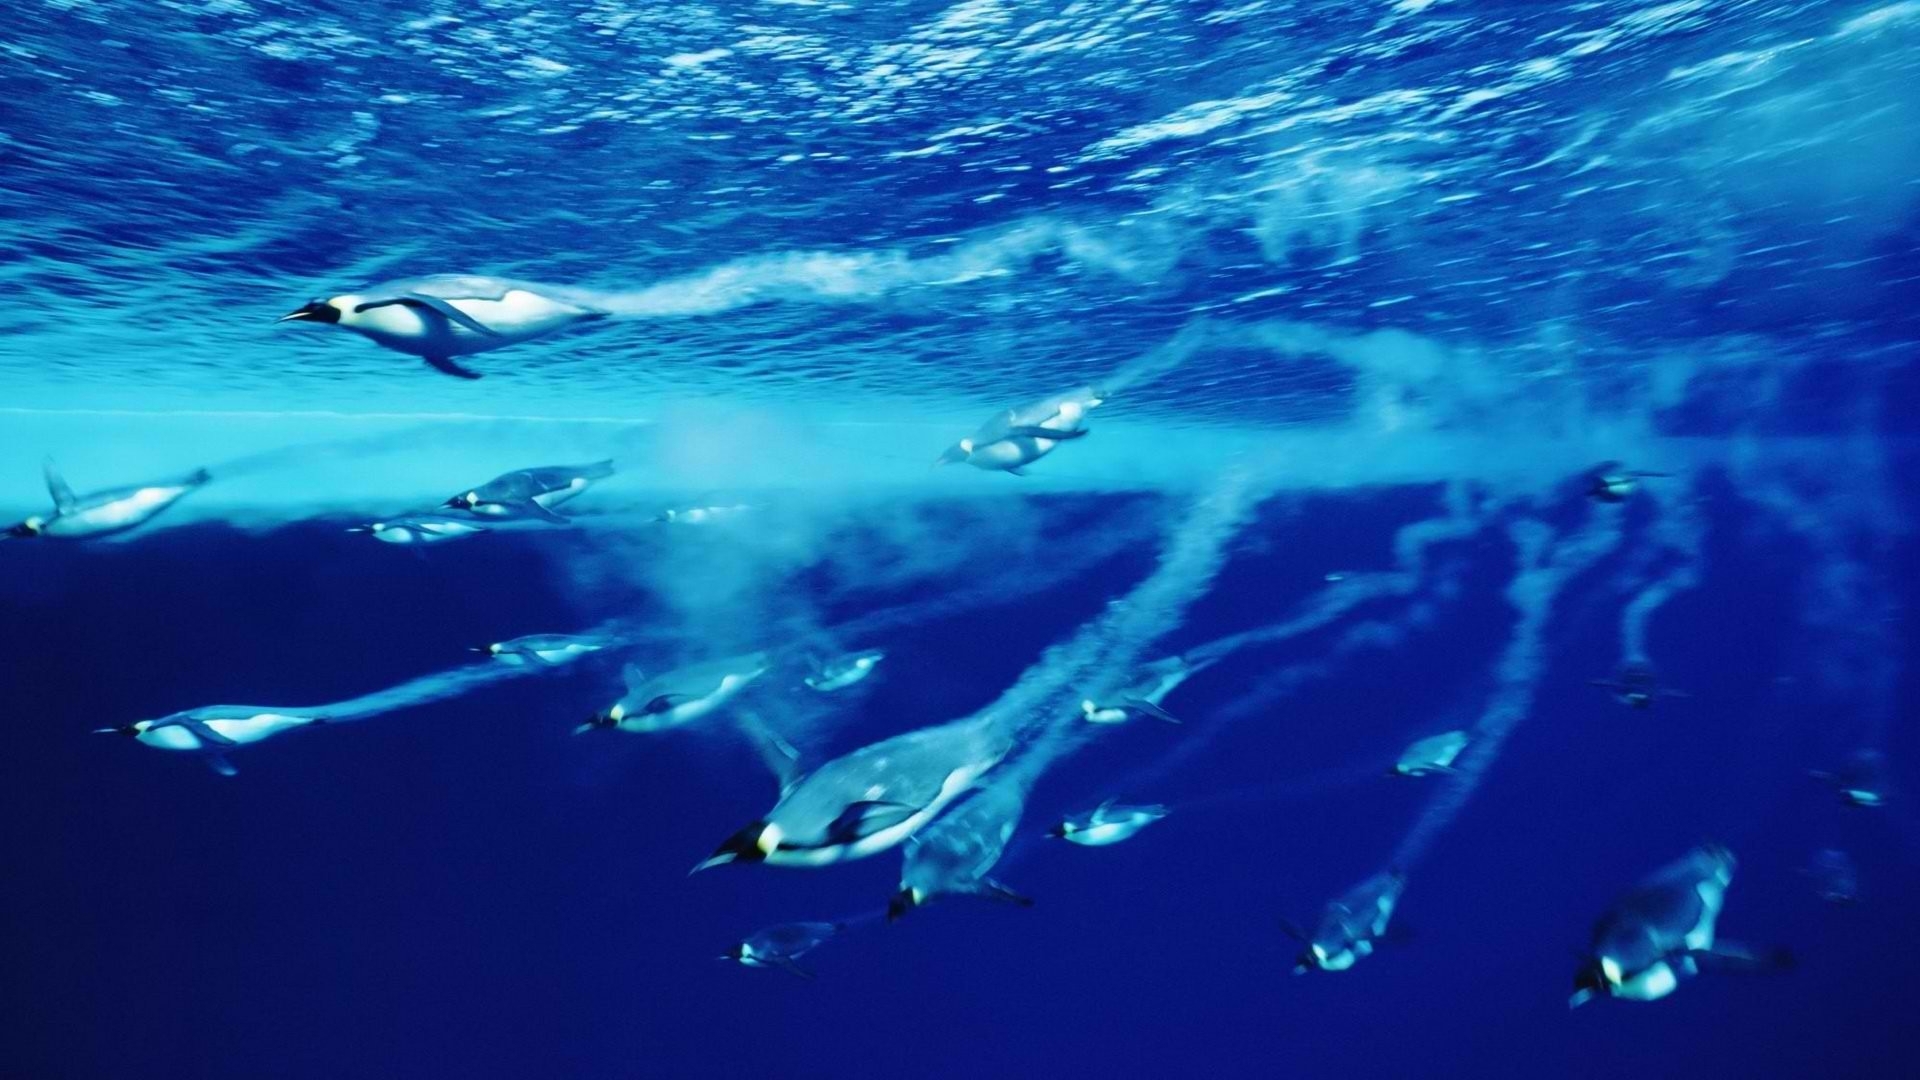 Penguins underwater ocean wallpaper 1920x1080 WallpaperUP